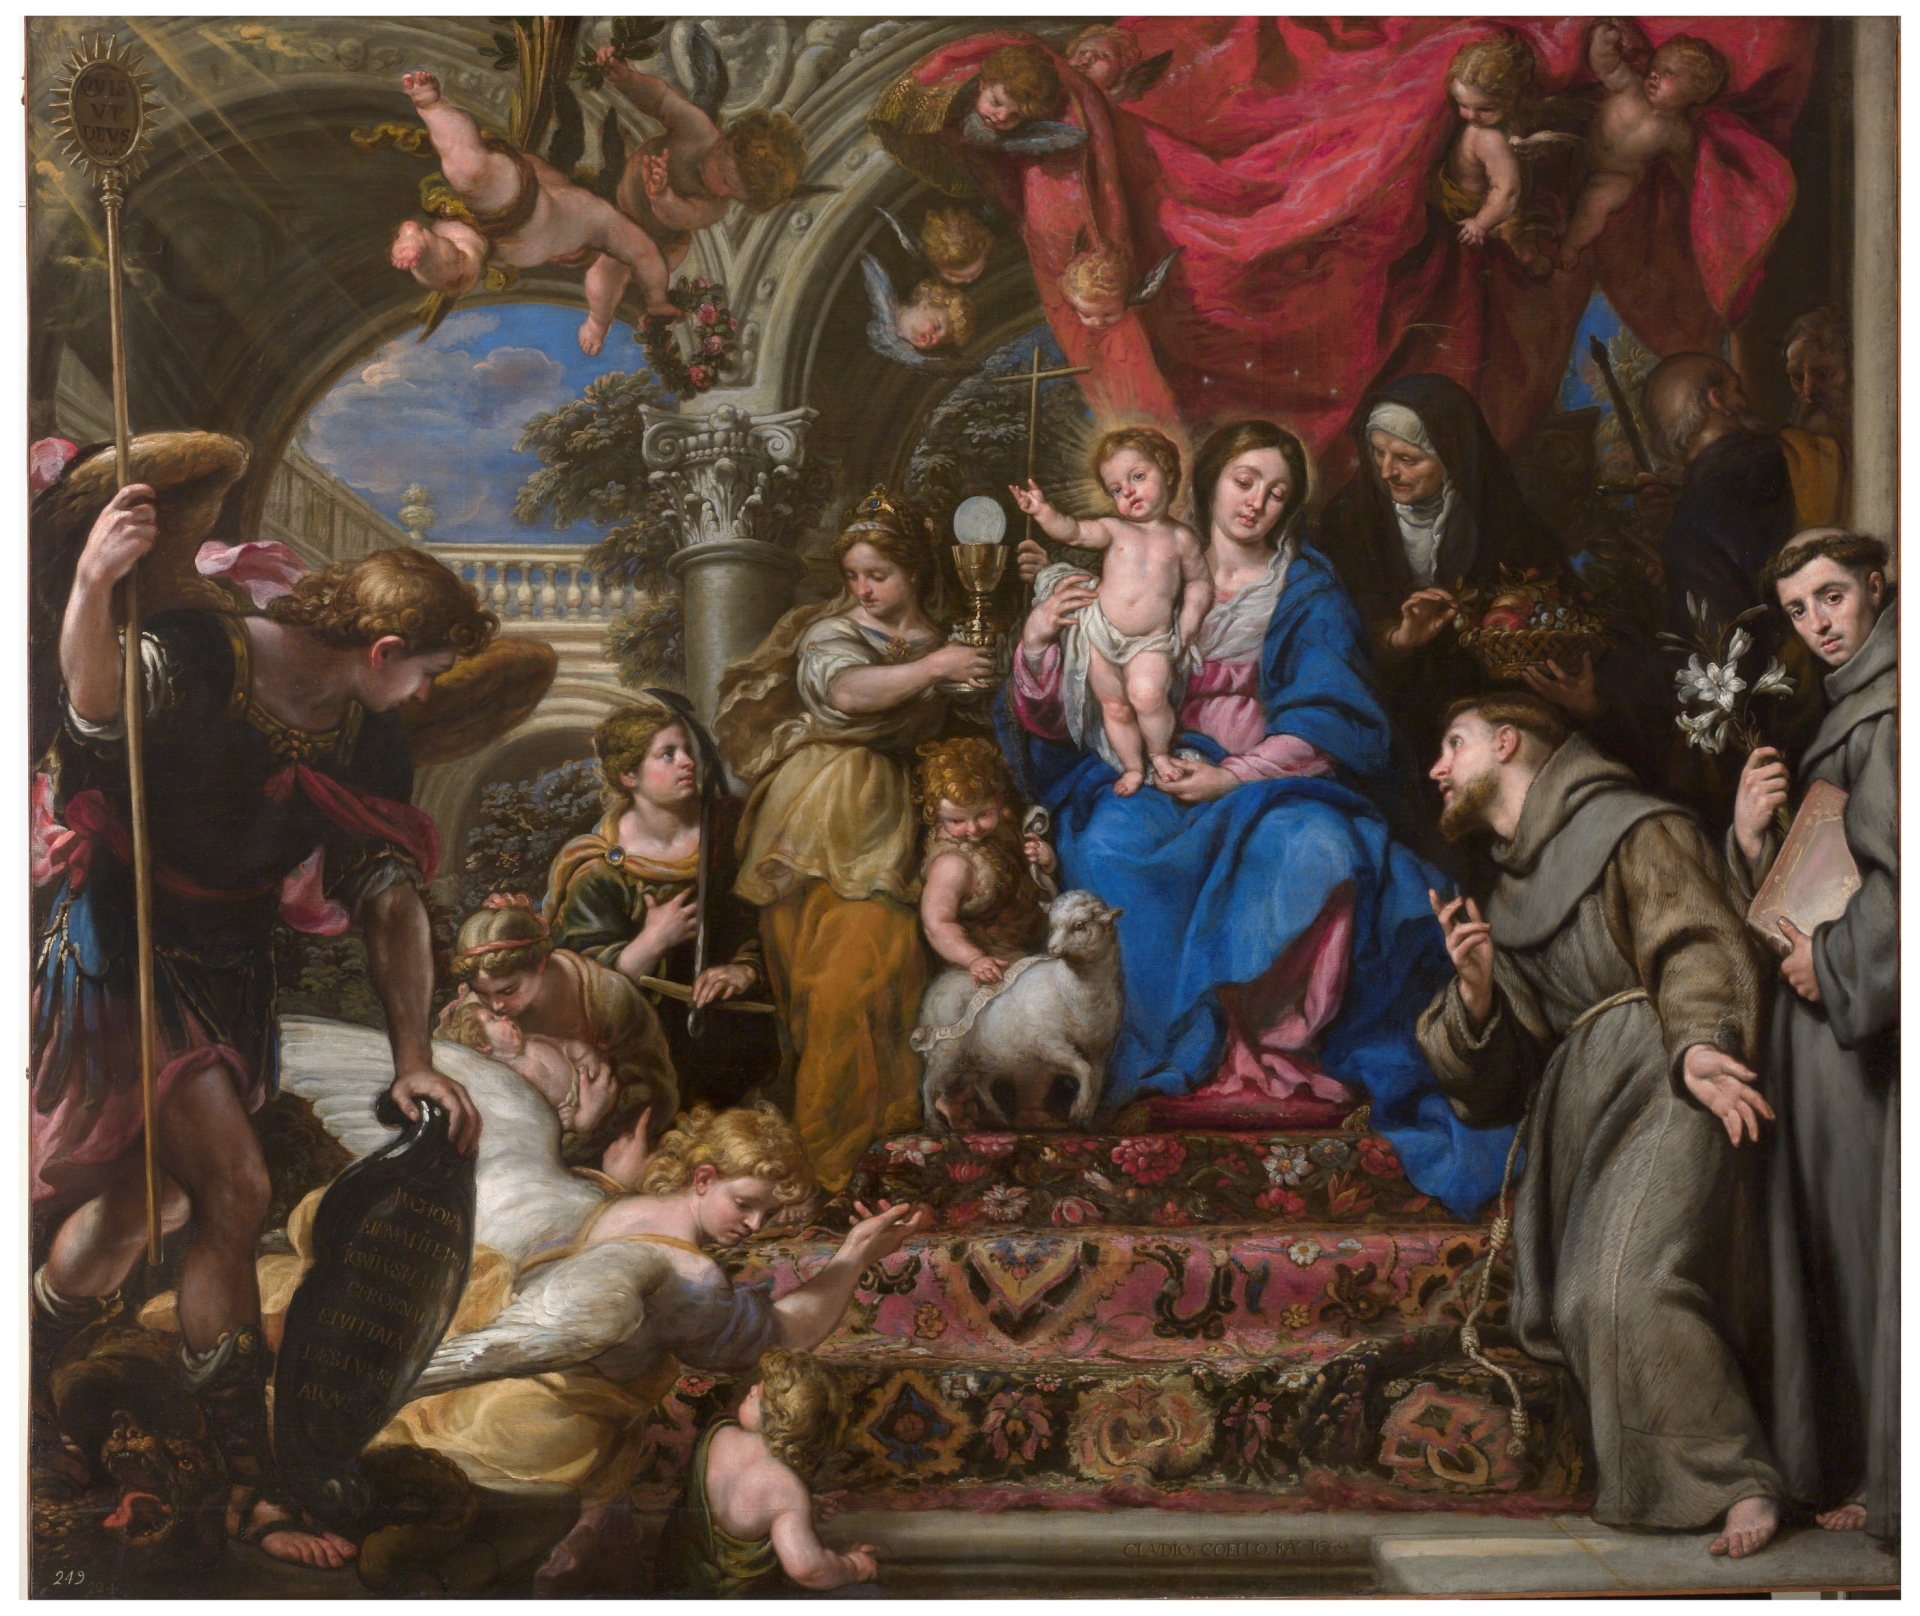 Claudio Coello. La Virgen con el Niño entre las Virtudes Teologales y santos, 1669. Museo Nacional del Prado